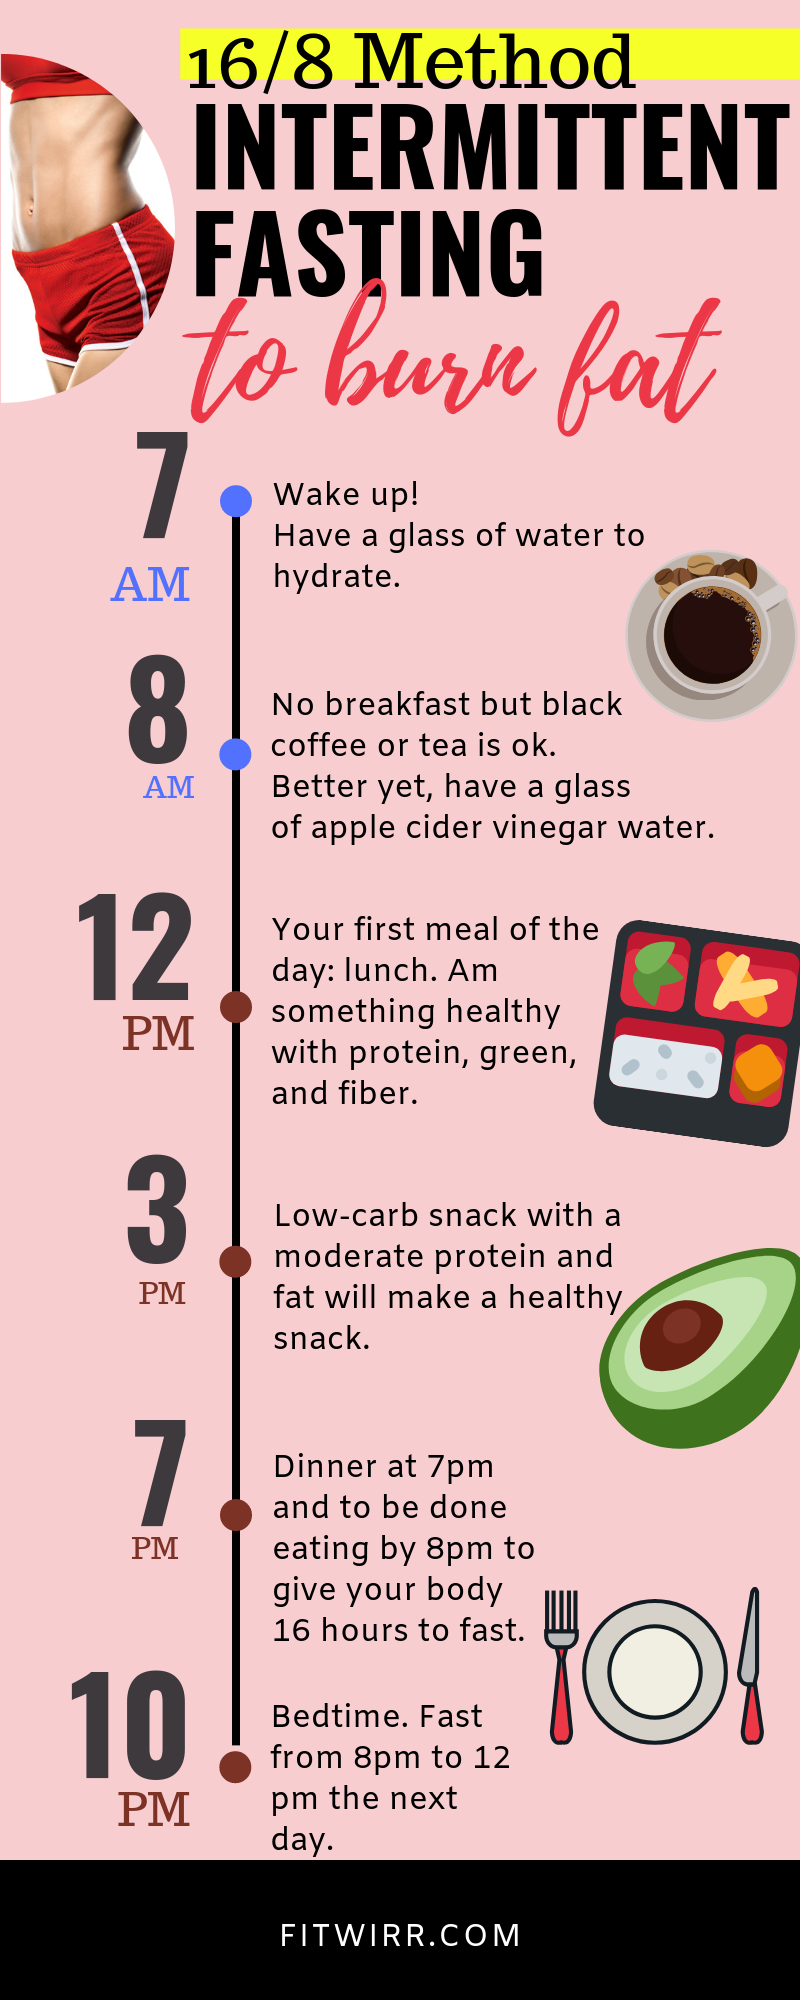 12 diet Low Carb plan ideas